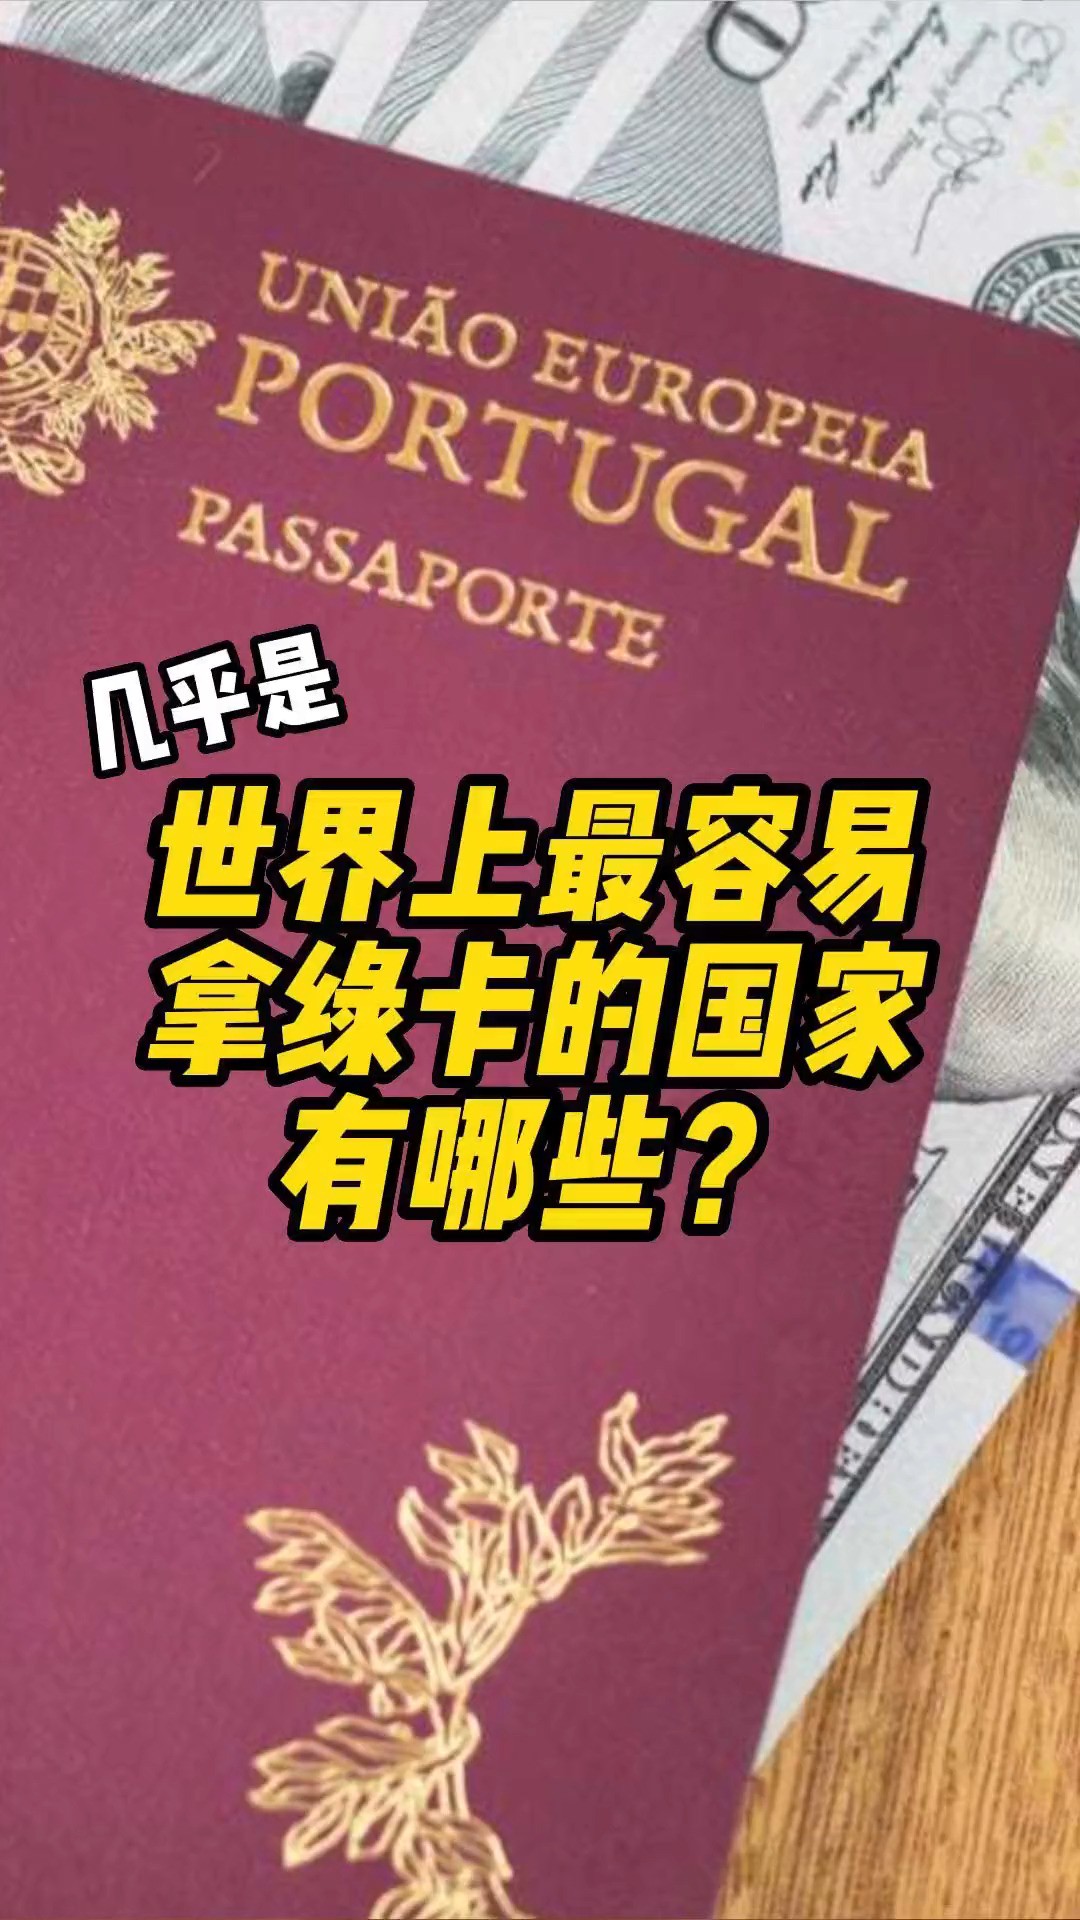 葡萄牙护照解析#移民 #绿卡 #护照 #葡萄牙 #海外身份规划.mp4

